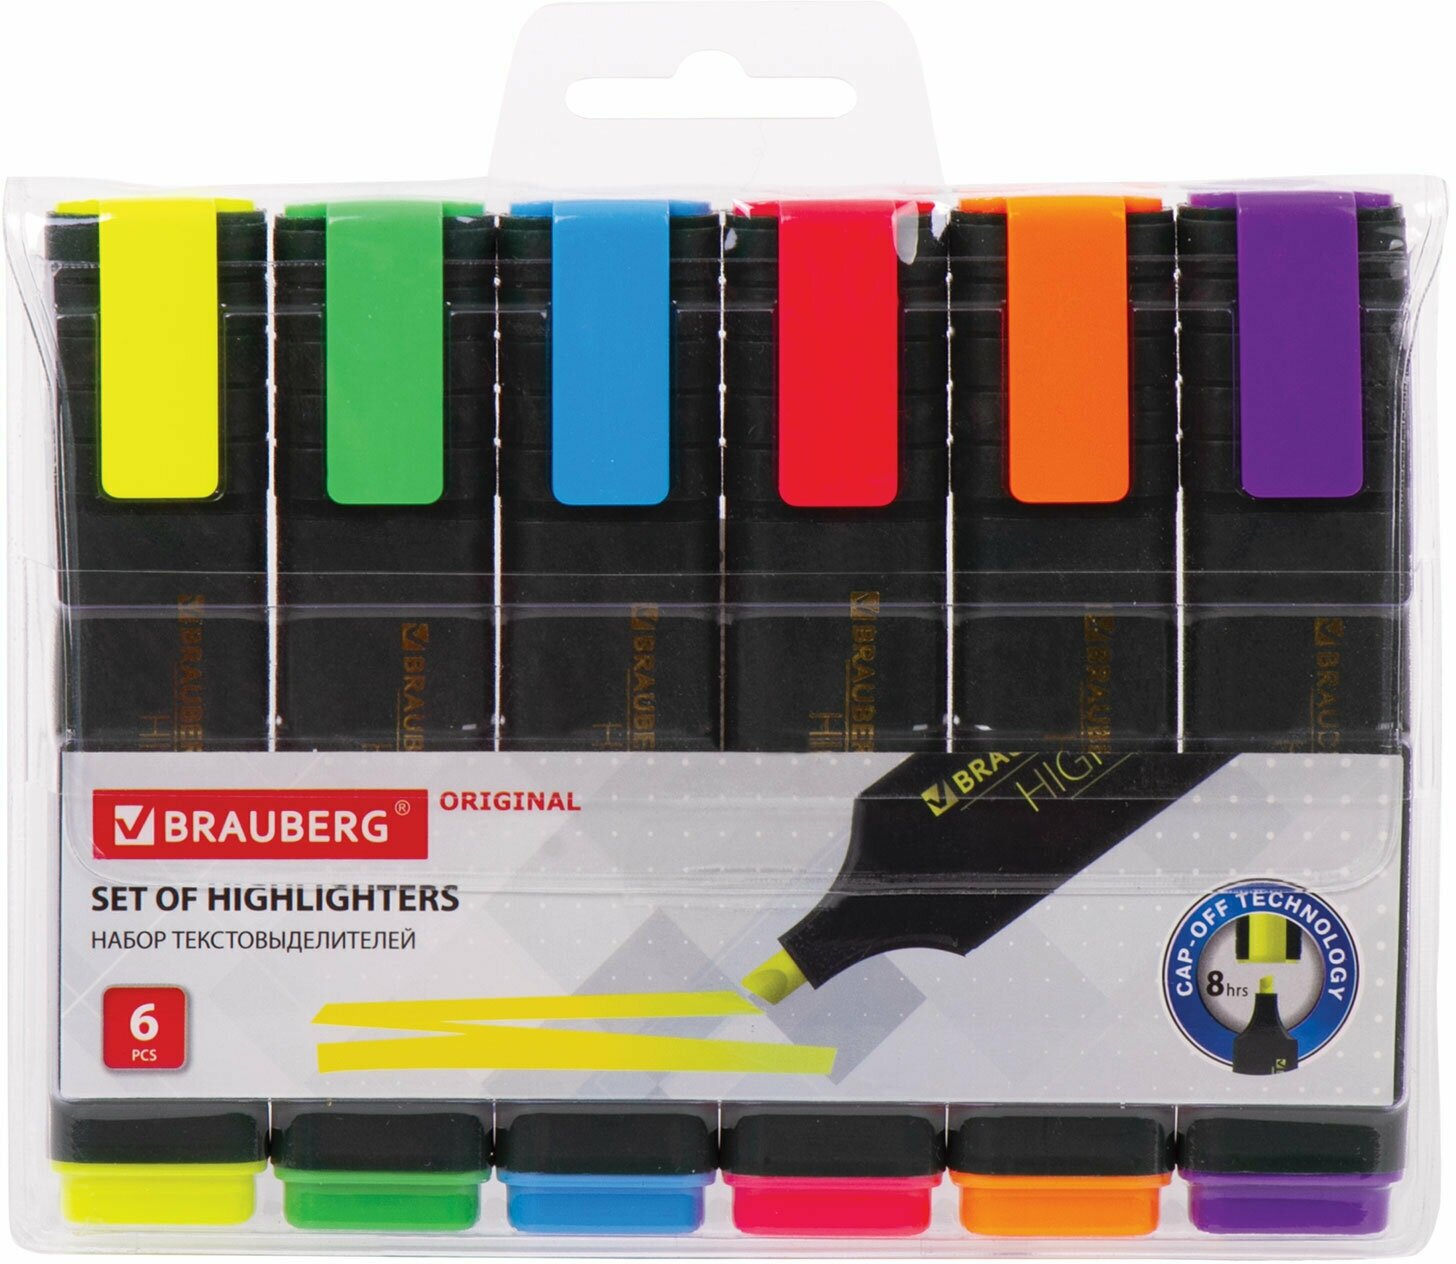 Маркер-текстовыделитель (для выделения текста) Brauberg "Original", набор из 6 штук, ассорти цветов, линия 1-5 мм